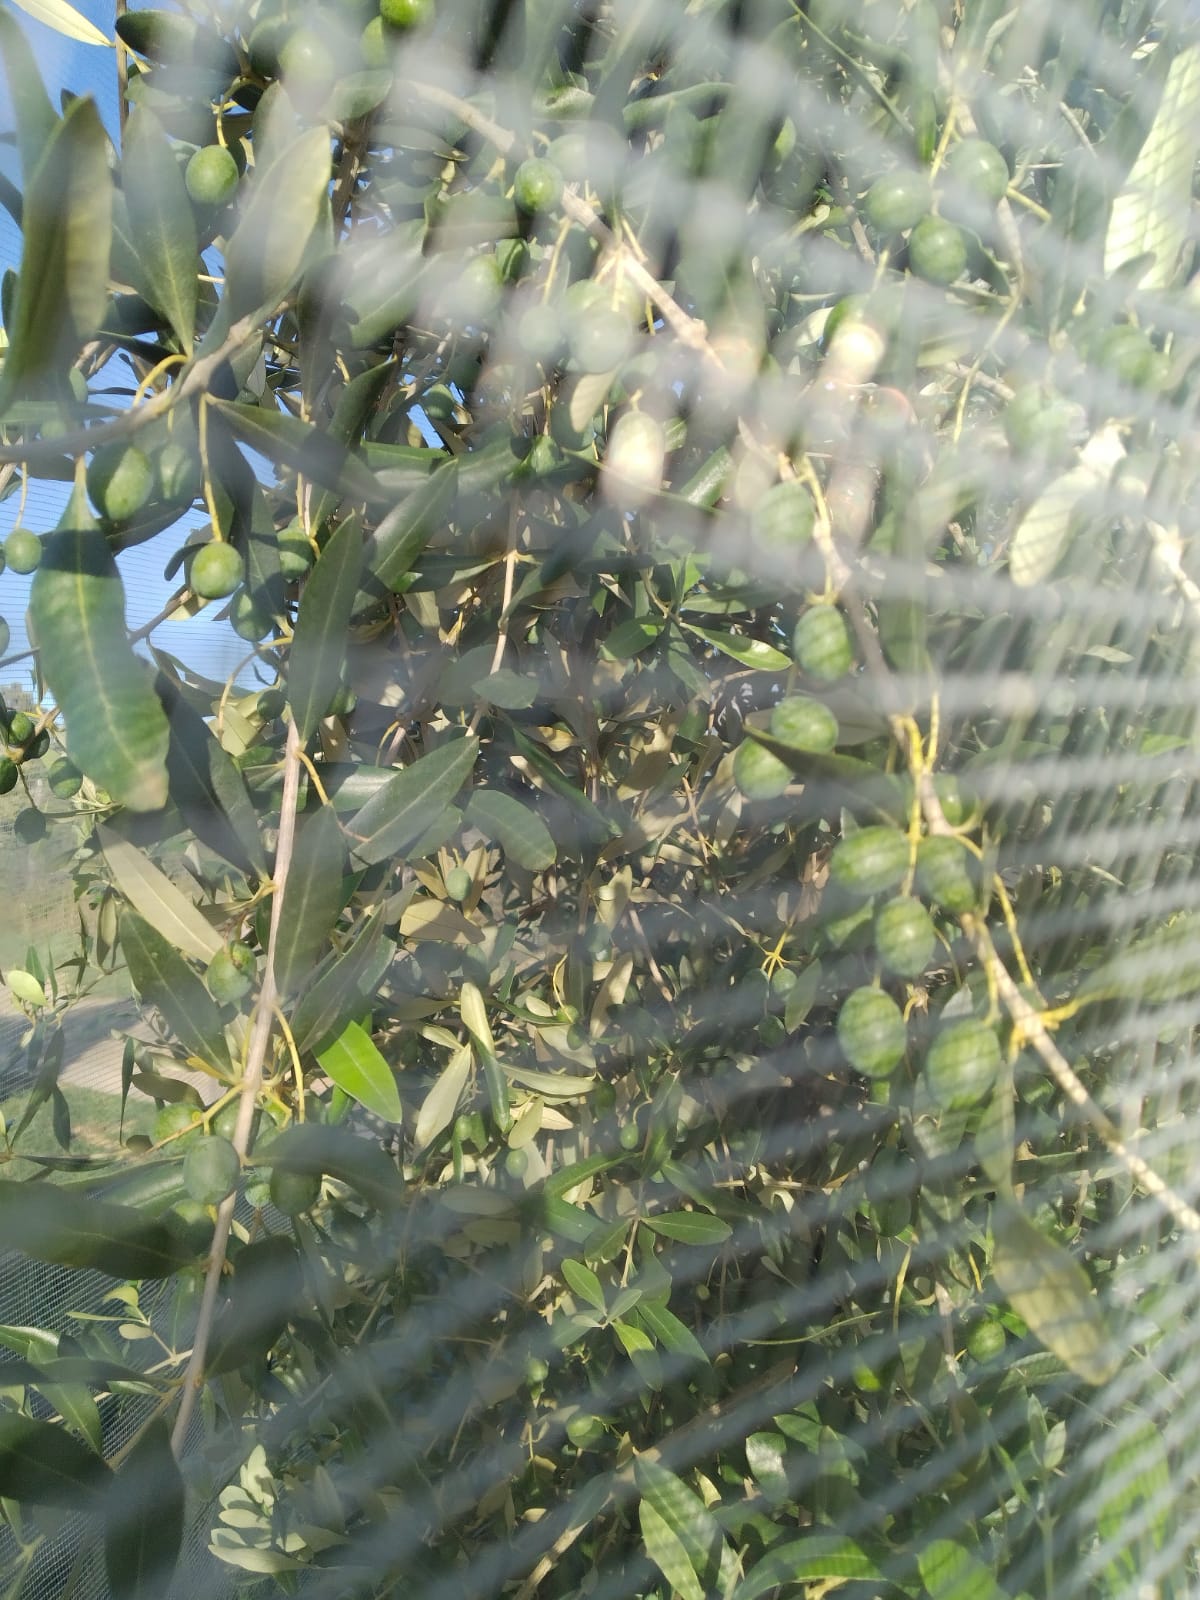 Sotto le reti le olive hanno una maturazione normale